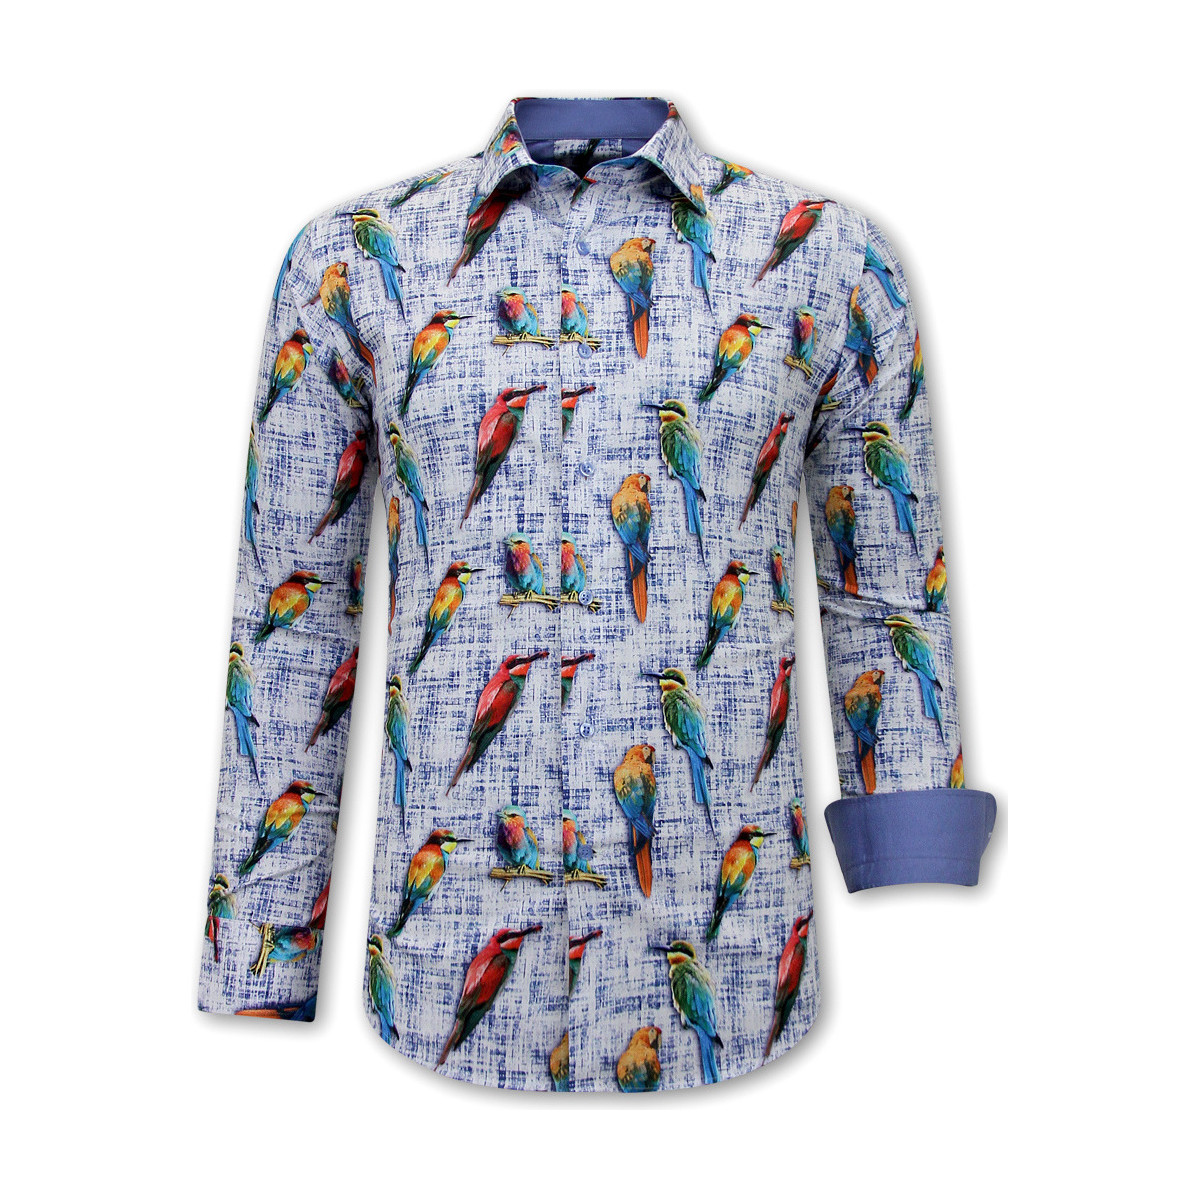 tekstylia Męskie Koszule z długim rękawem Gentile Bellini 140086303 Niebieski